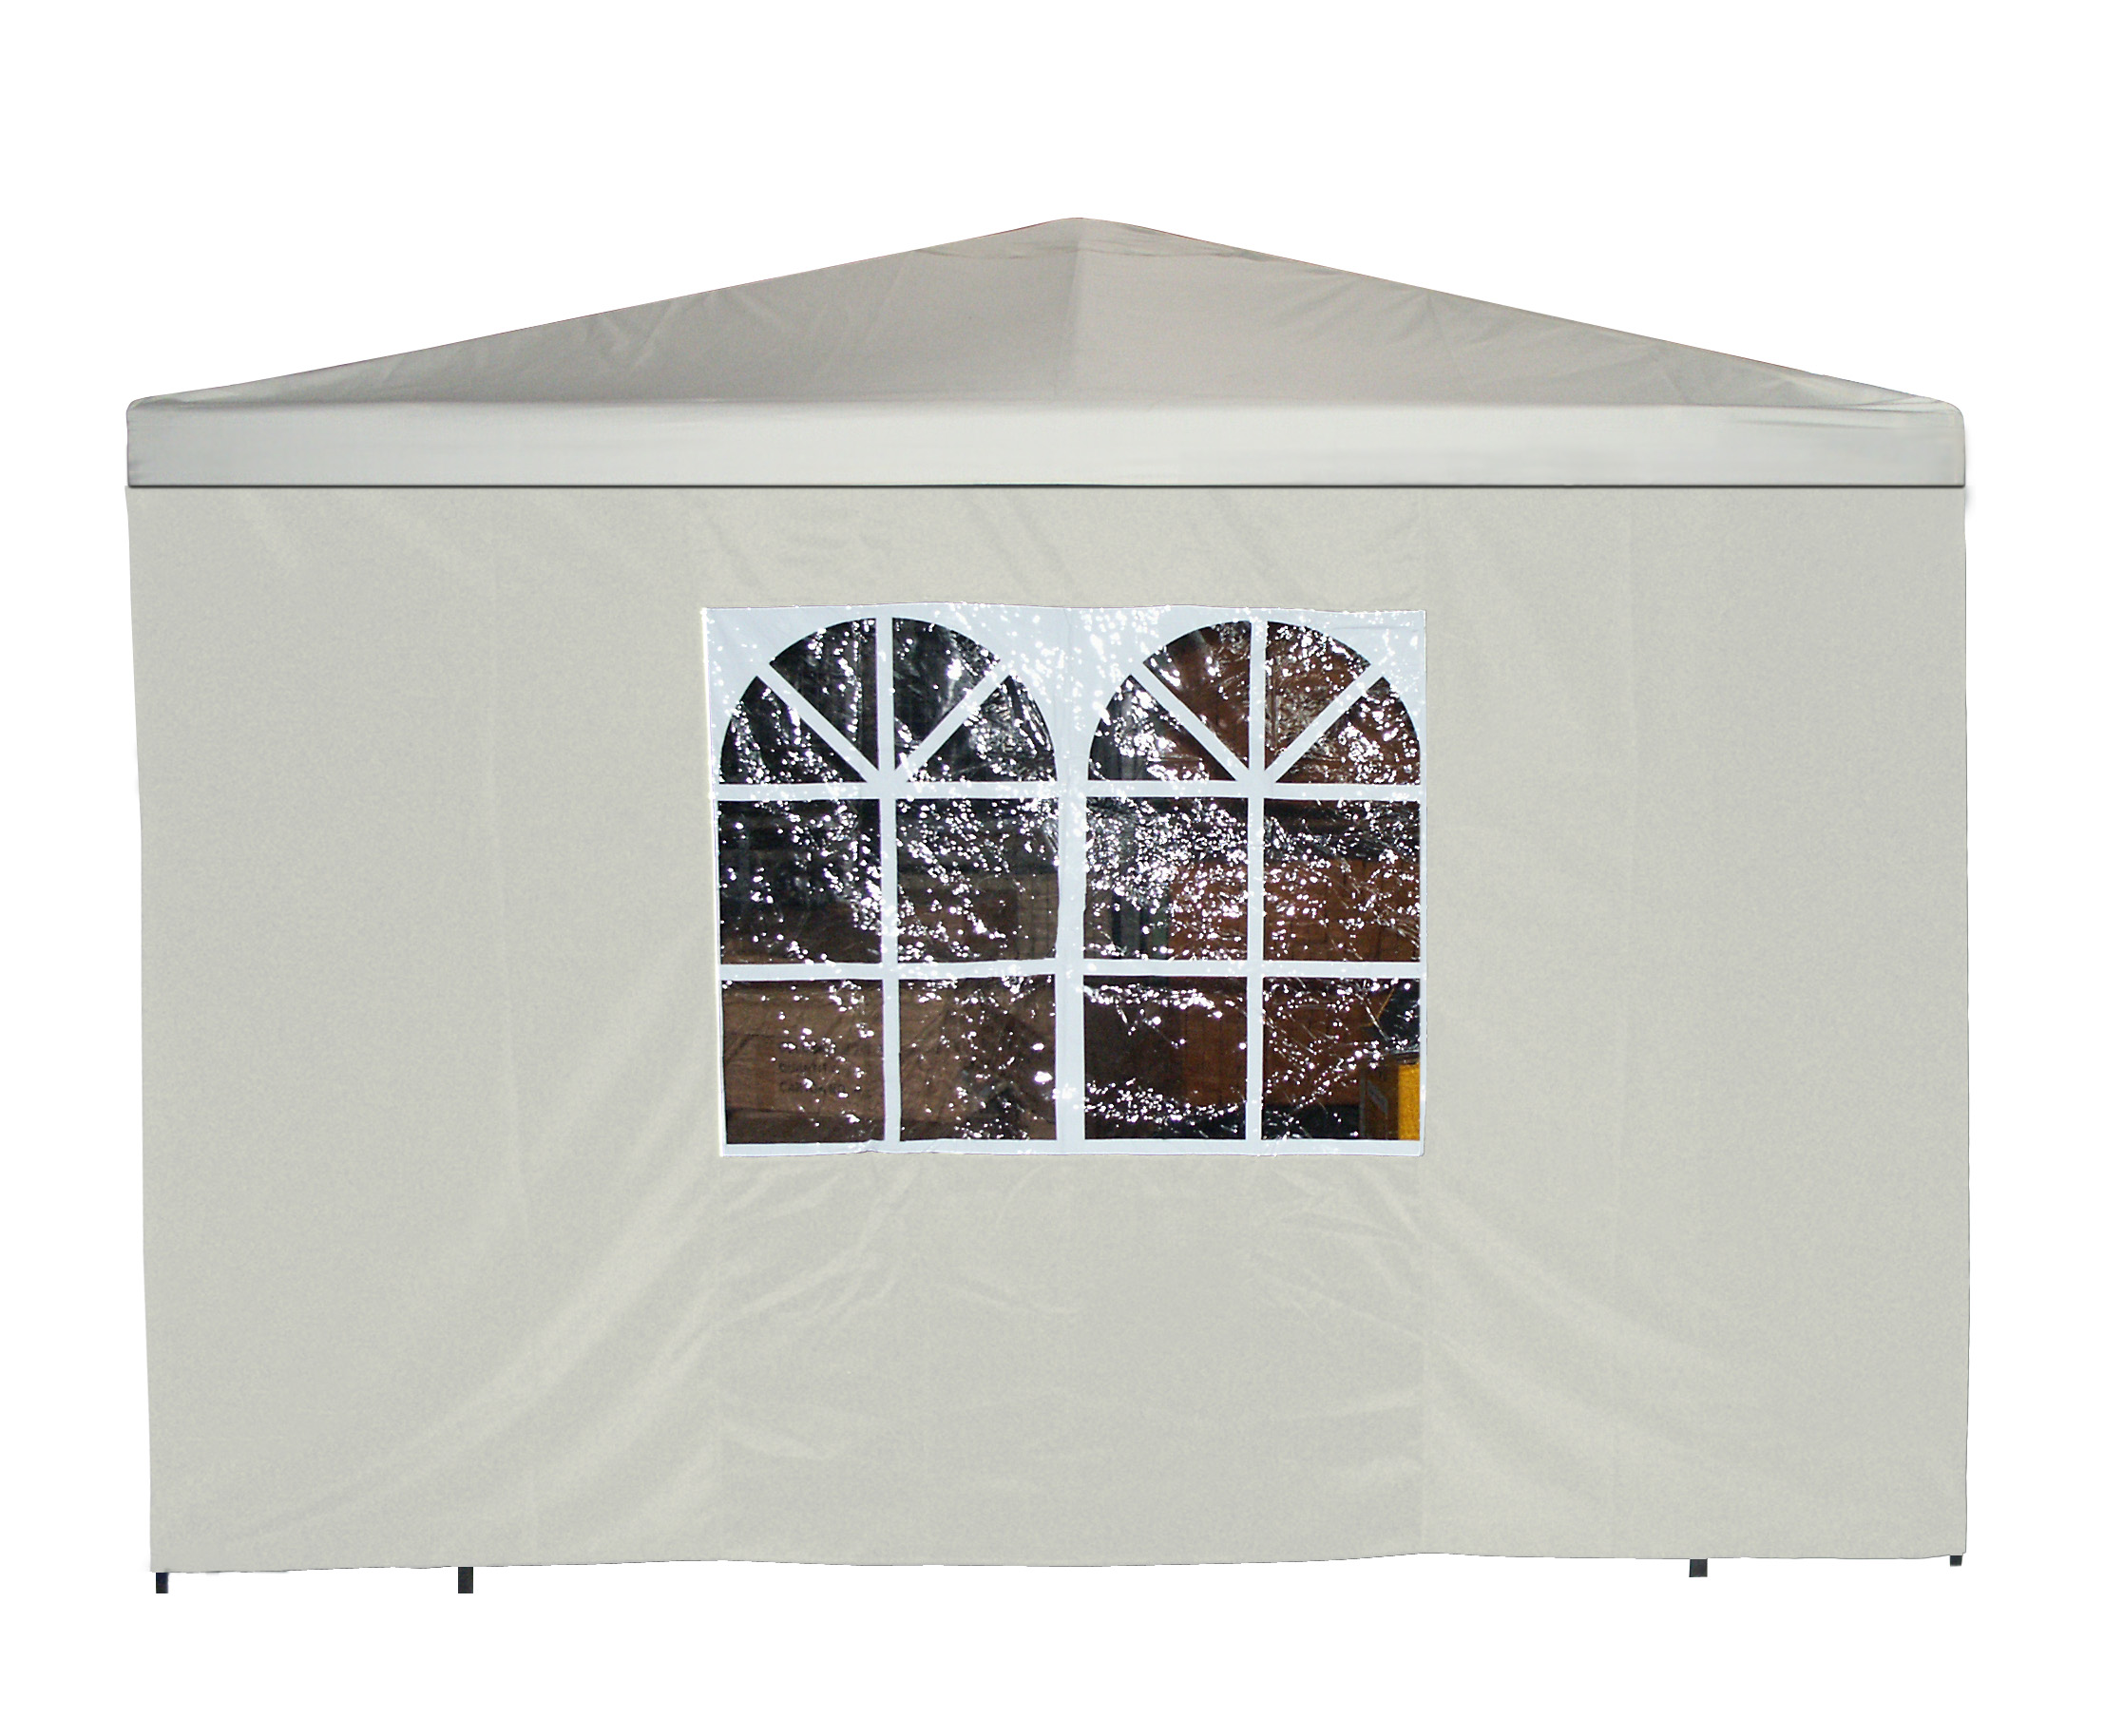 Seitenplane für Pavillon, 3x1,9 Meter, Polyester ecru mit Fenster